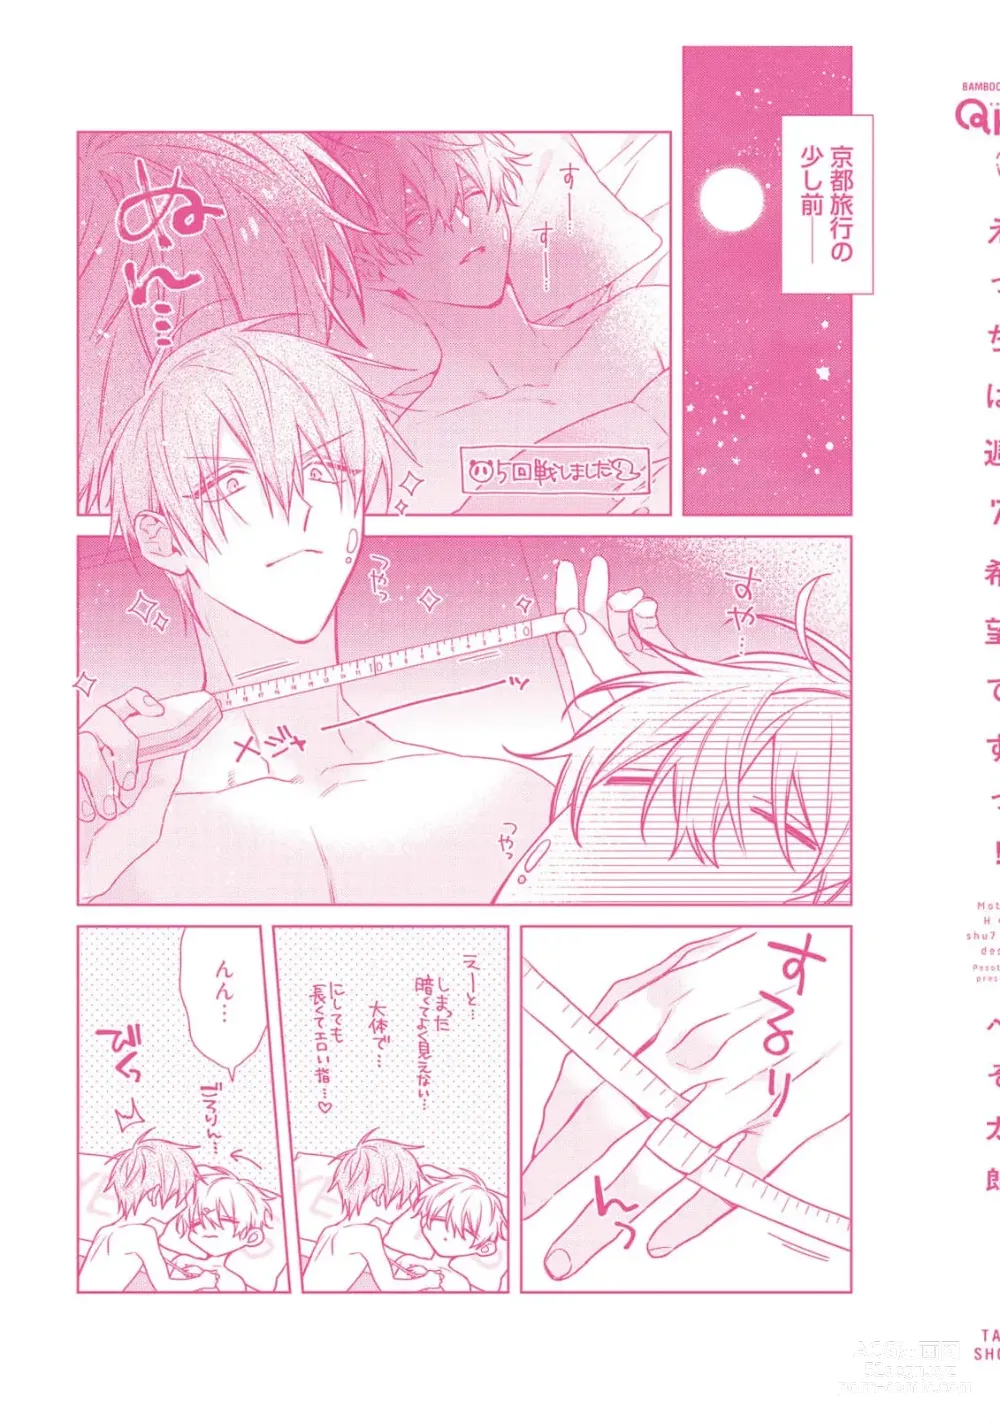 Page 263 of manga Motto! Ecchi wa shuu 7 Kibou Desu!